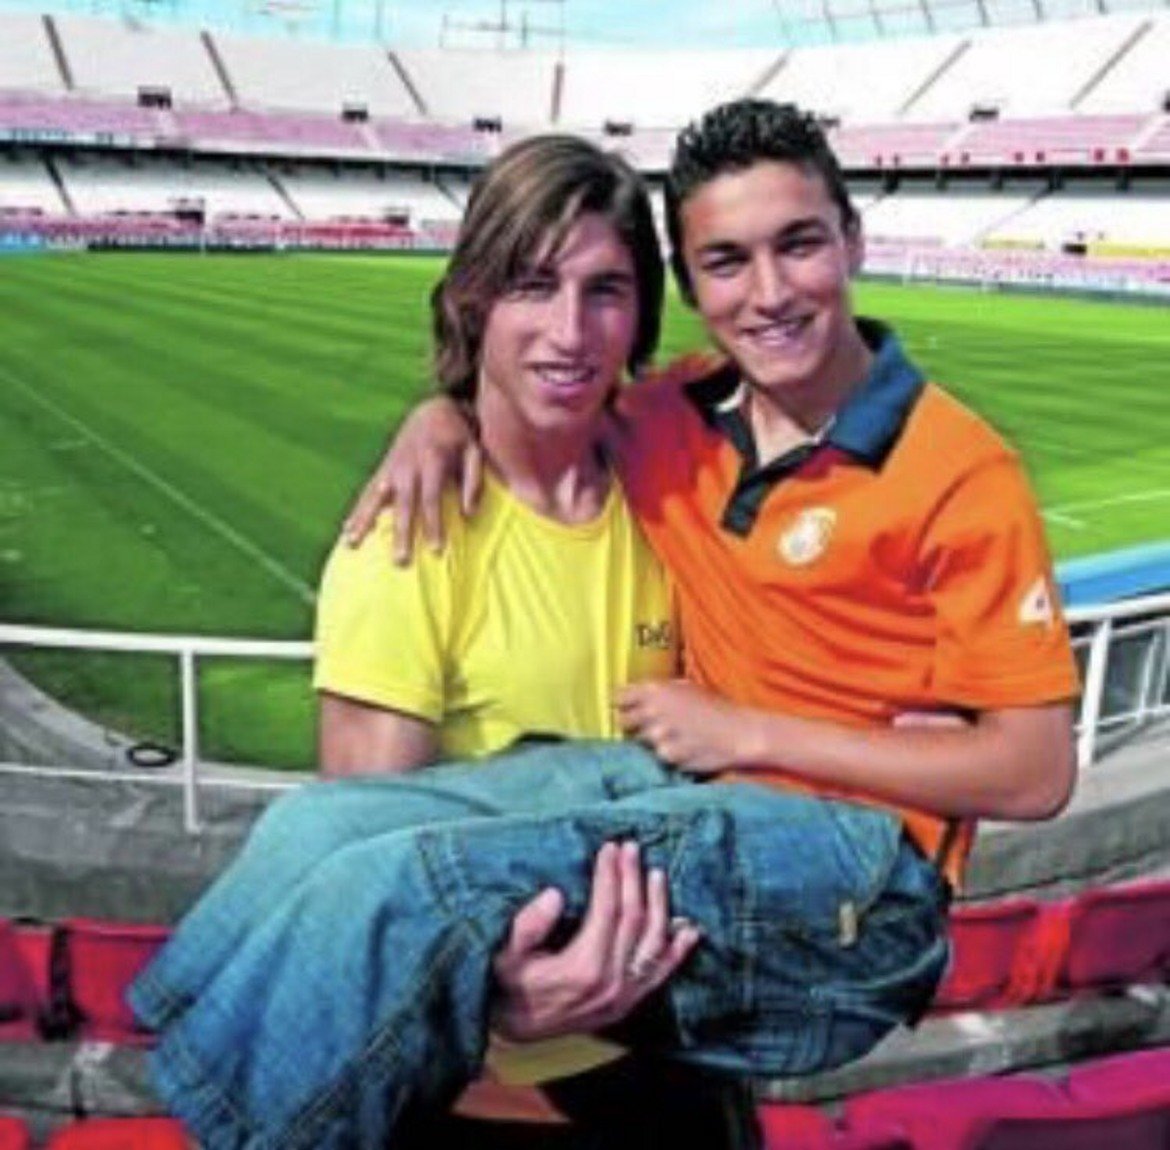 Серхио Рамос и Хесус Навас, когато двамата играеха заедно за Севиля. Помните ли модата на 7/8-ите дънки?